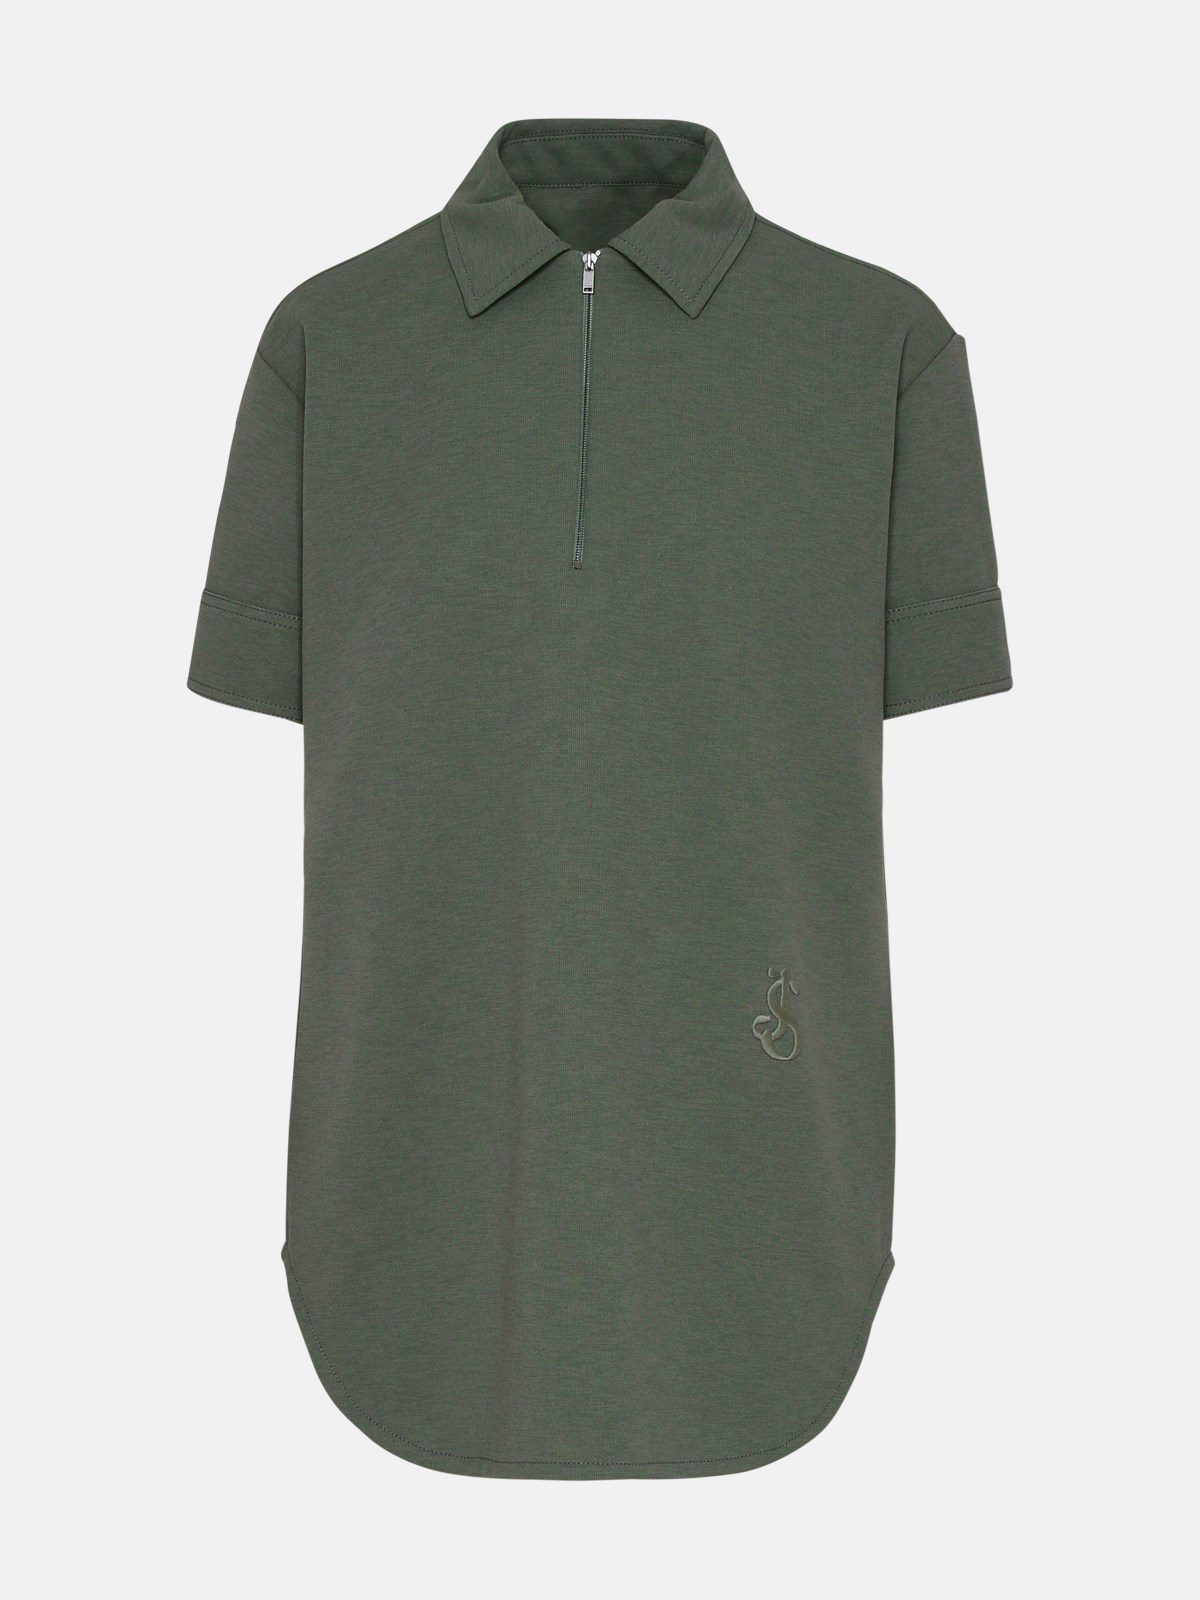 Jil Sander Green Cotton Blend Shirt